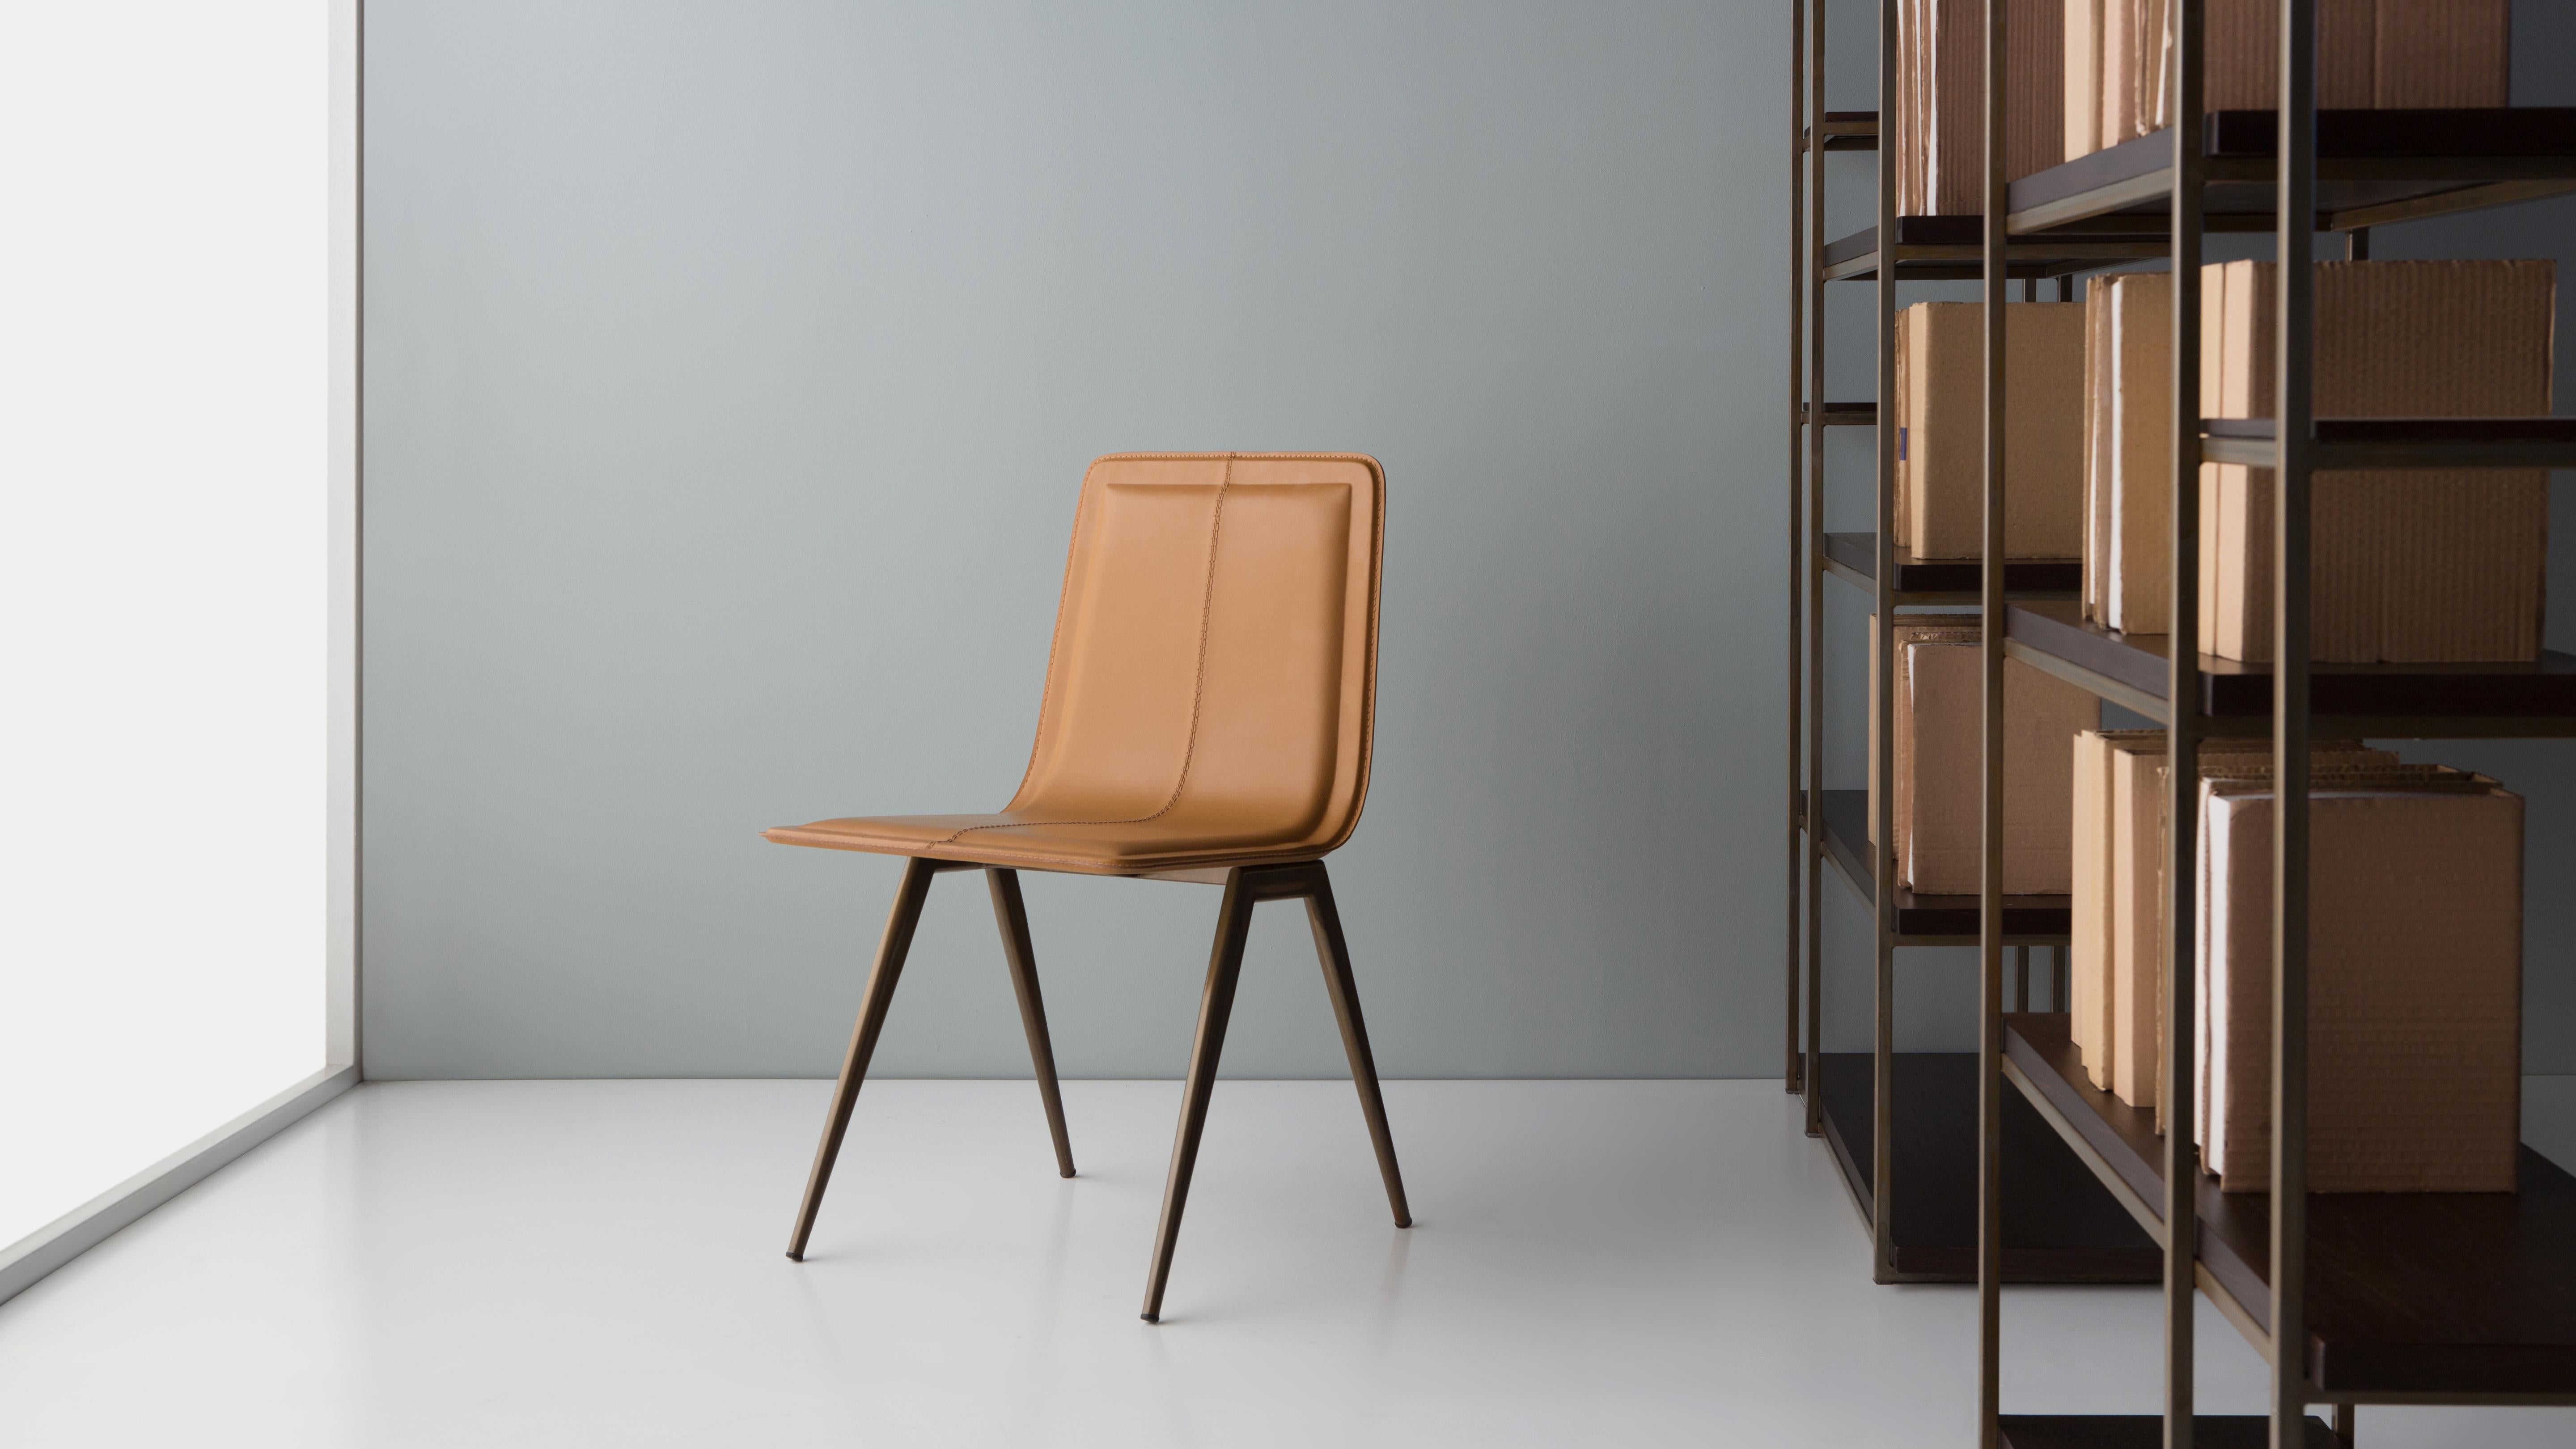 Tecno-Stuhl von Doimo Brasil
Abmessungen: B 46 x T 55 x H 83 cm 
MATERIALIEN: Furnier, Naturleder.


Mit der Absicht, guten Geschmack und Persönlichkeit zu vermitteln, entschlüsselt Doimo Trends und folgt der Entwicklung des Menschen und seines